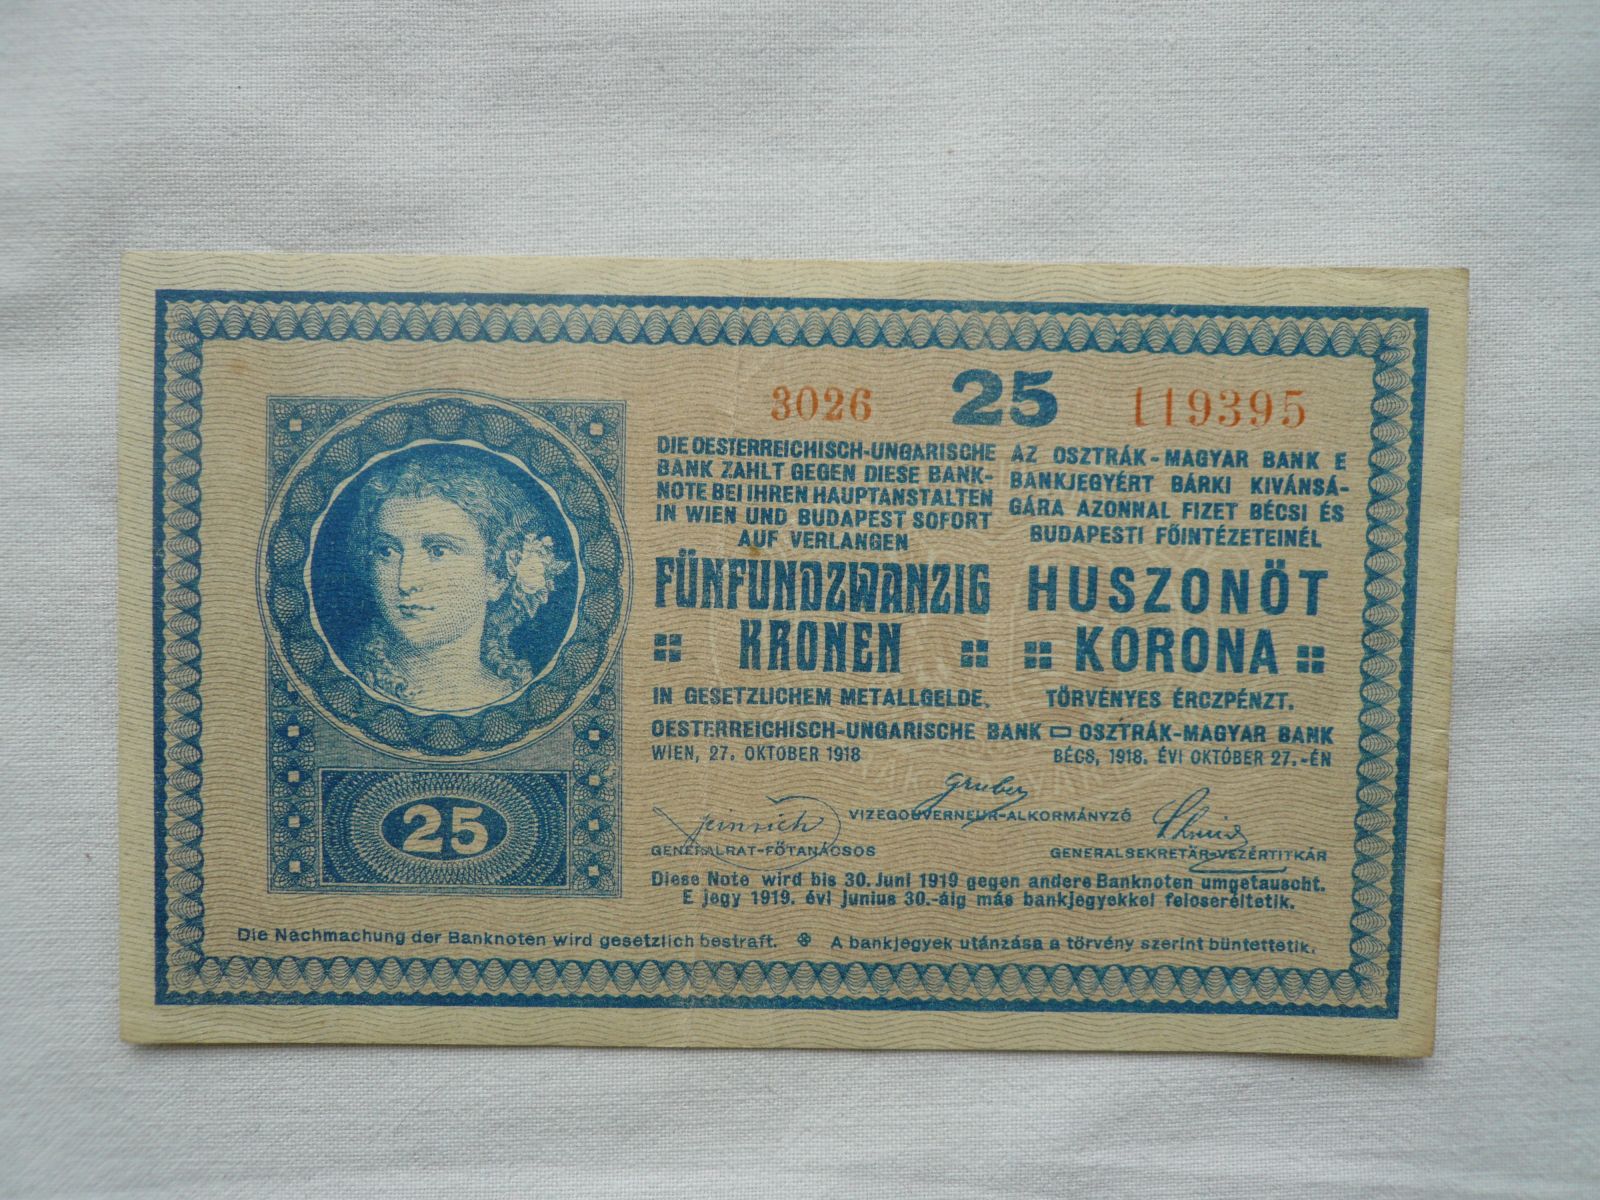 25 Korun, 3026, 1918, Rakousko